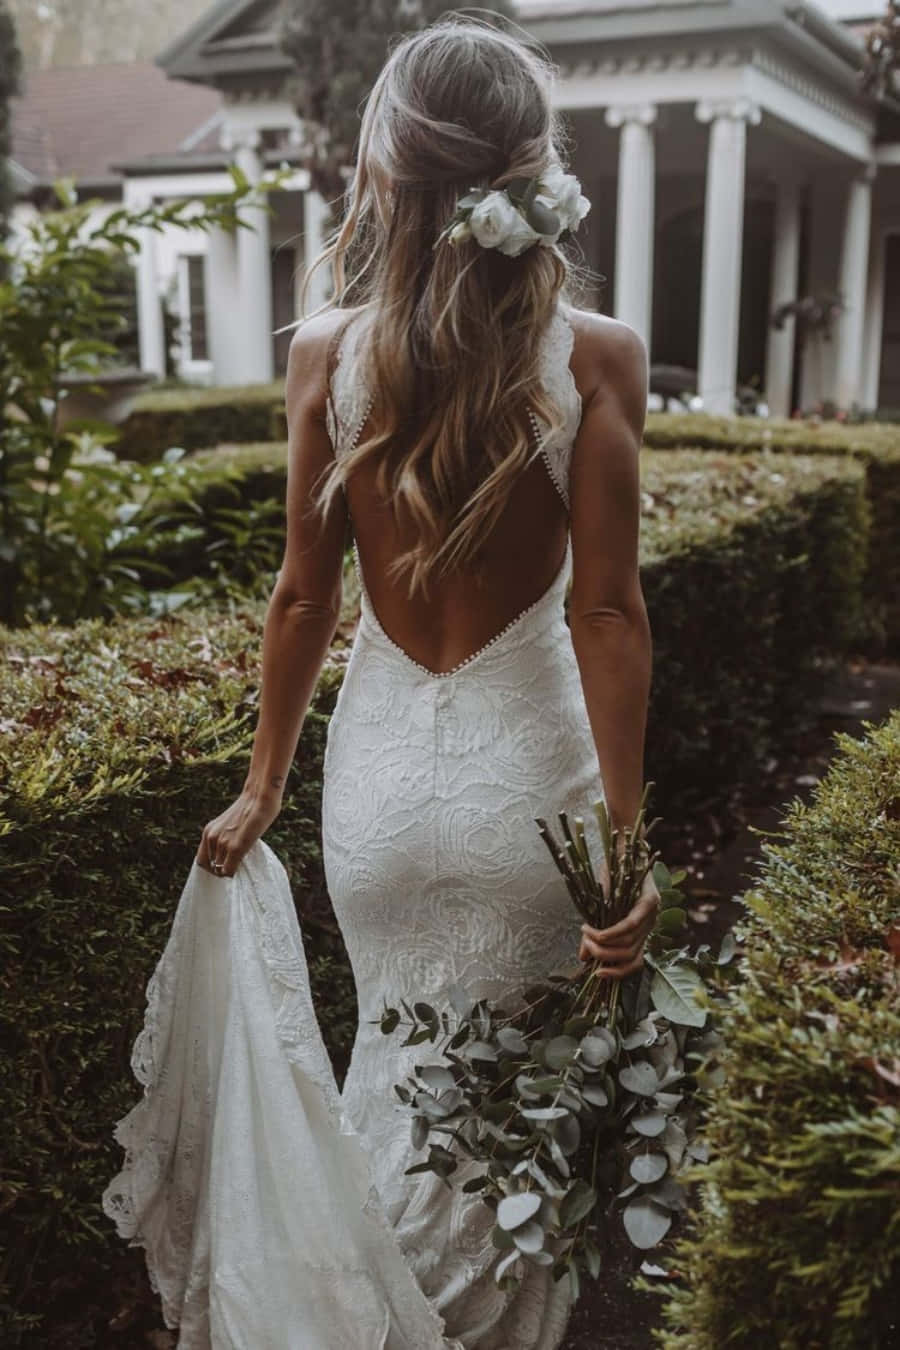 Elegant Bride in Stunning Wedding Gown